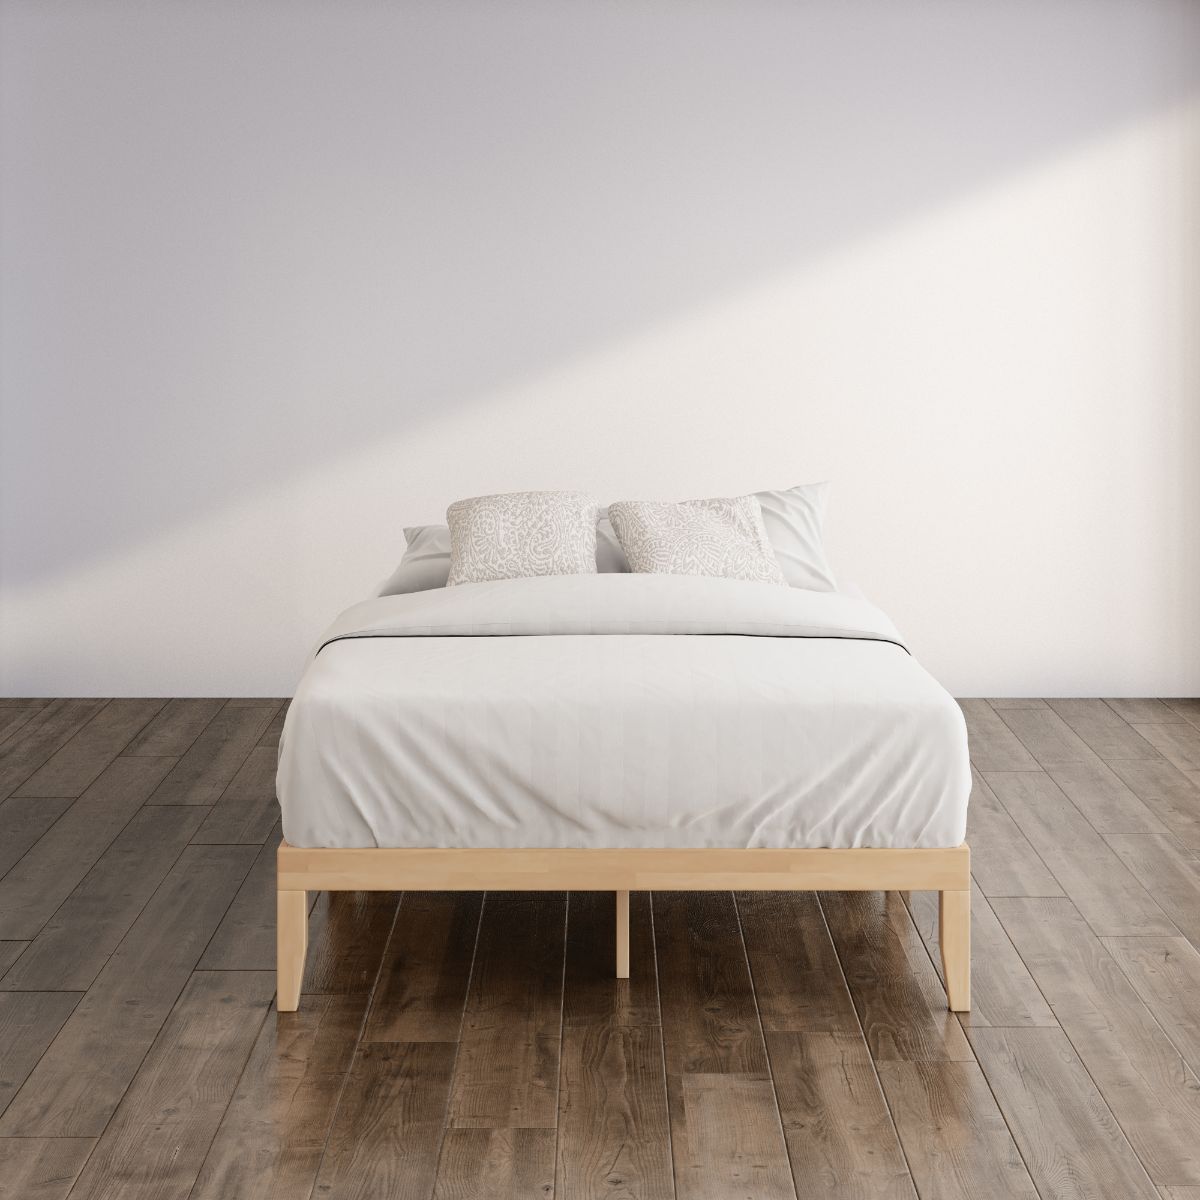 Moiz wood platform bed frame brown